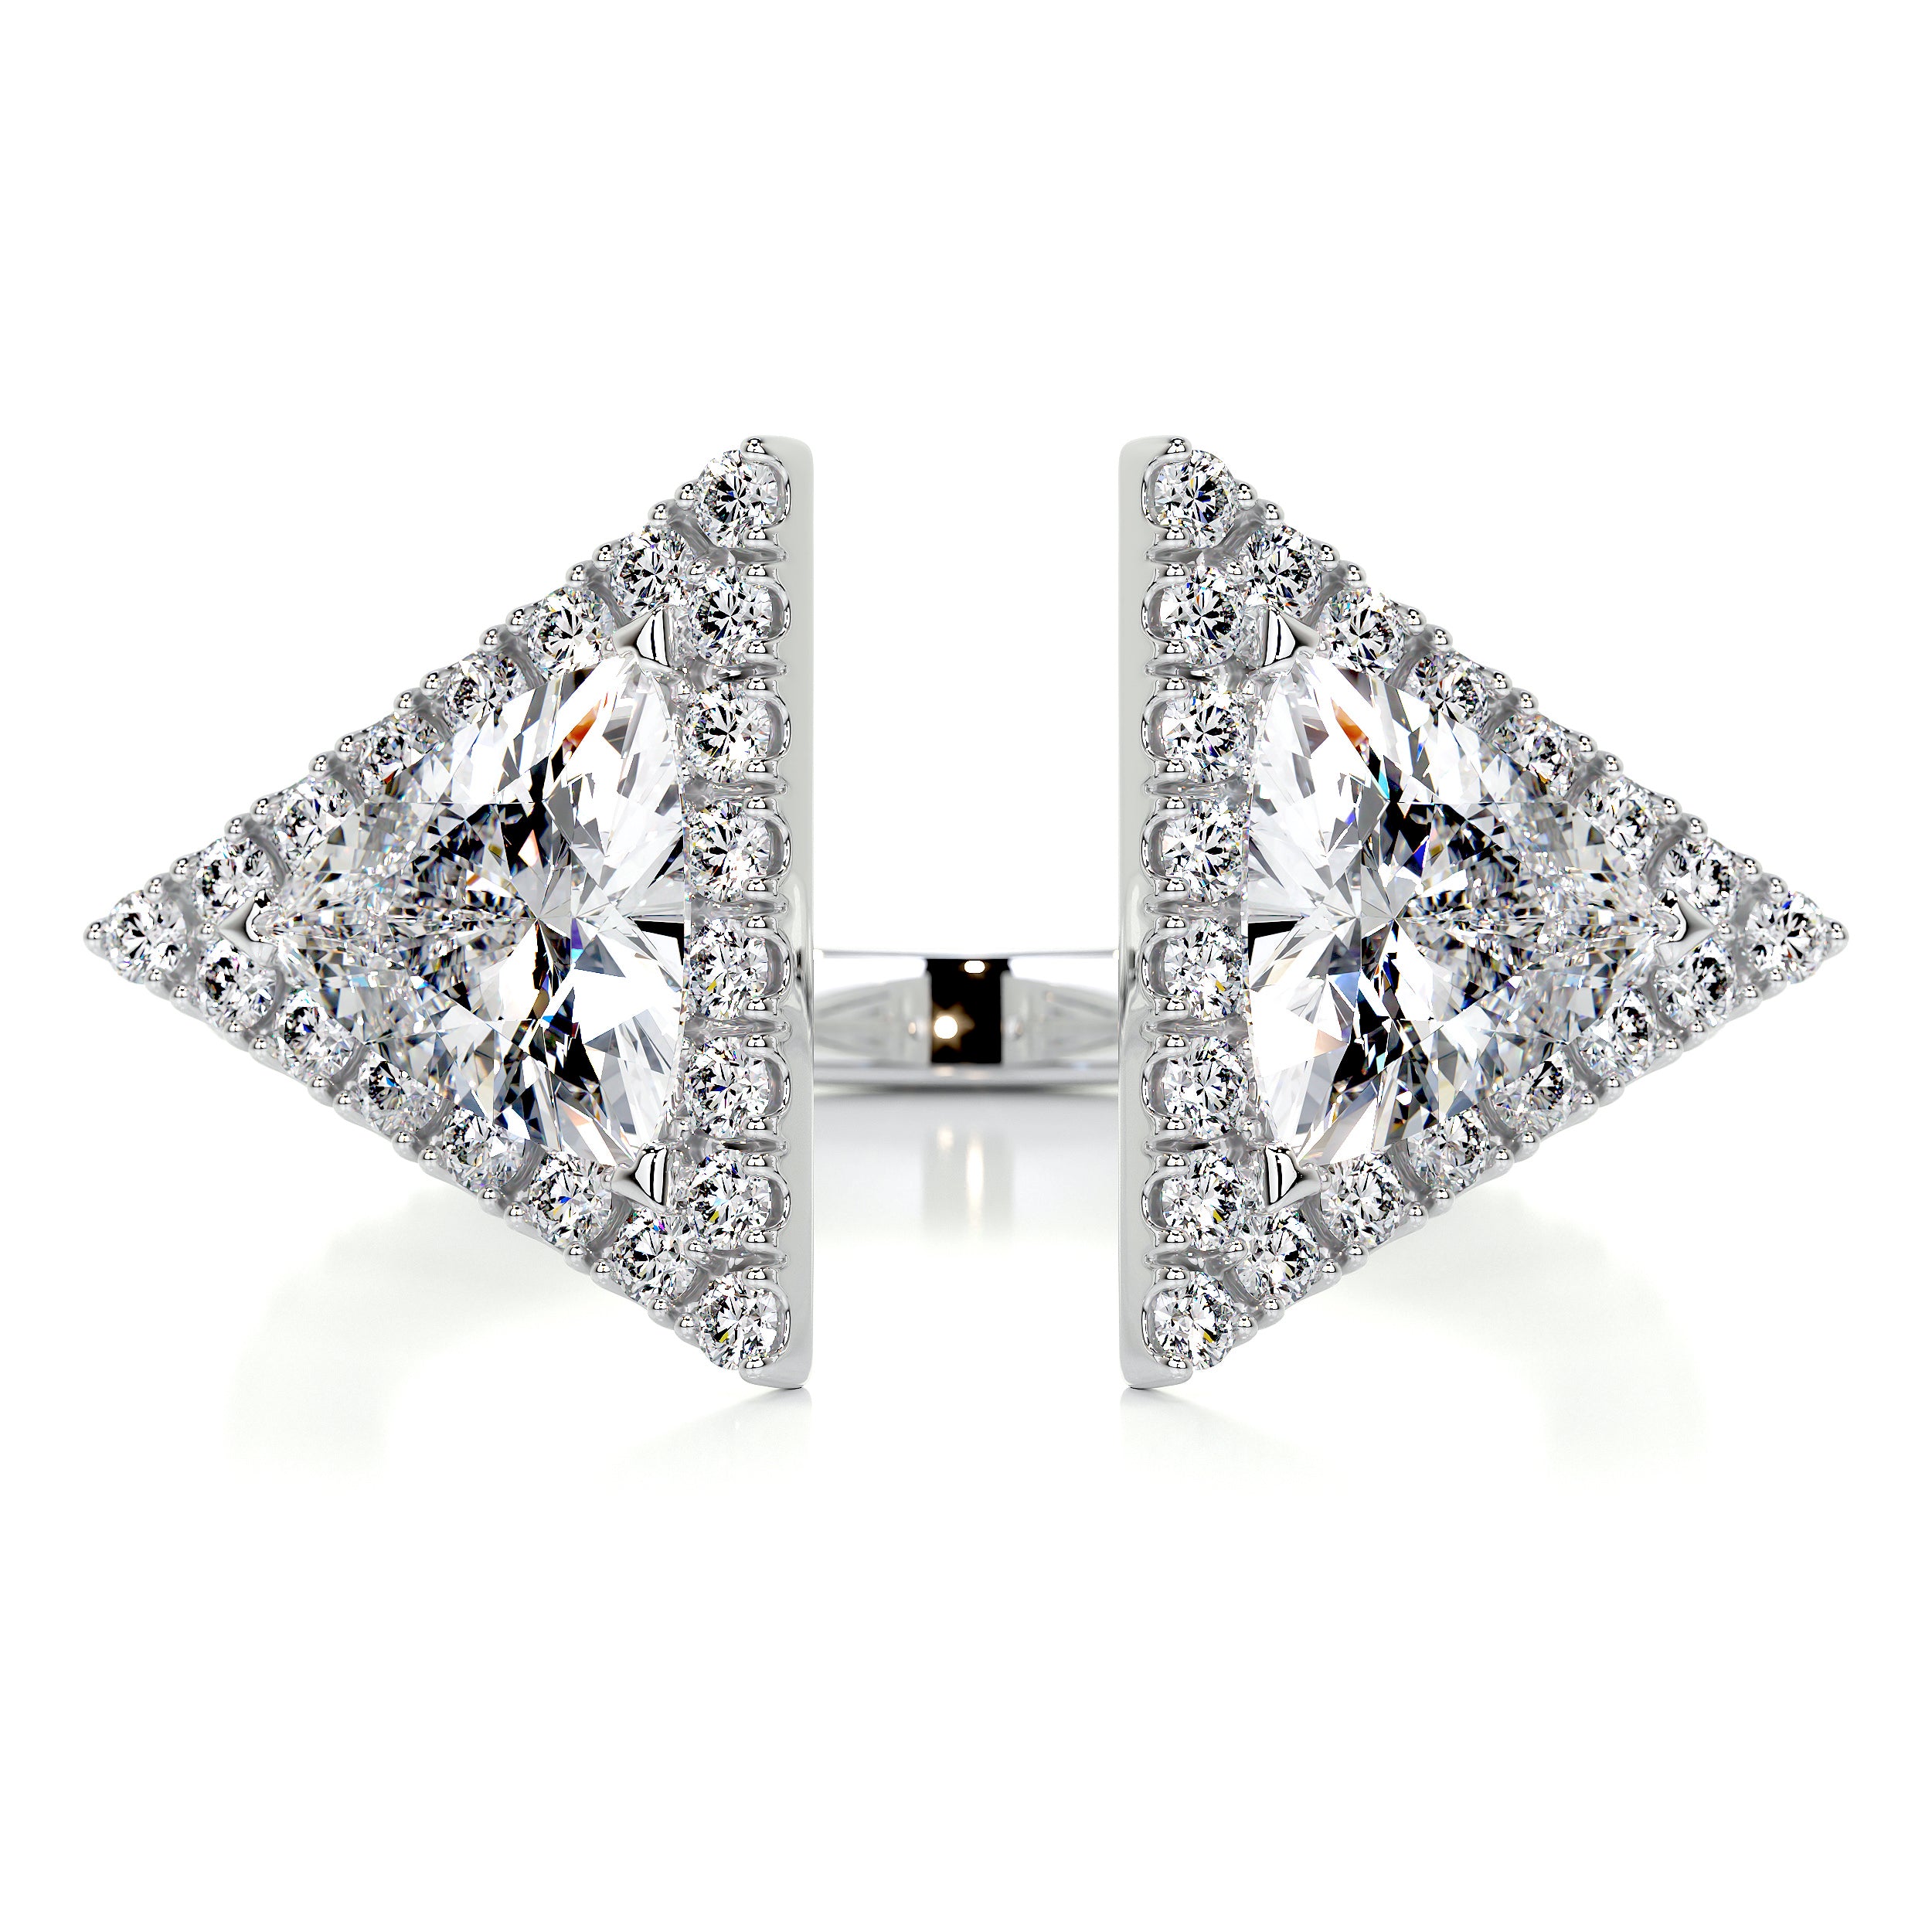 Jade Fashion Diamond Ring   (1.5 carat) -14K White Gold